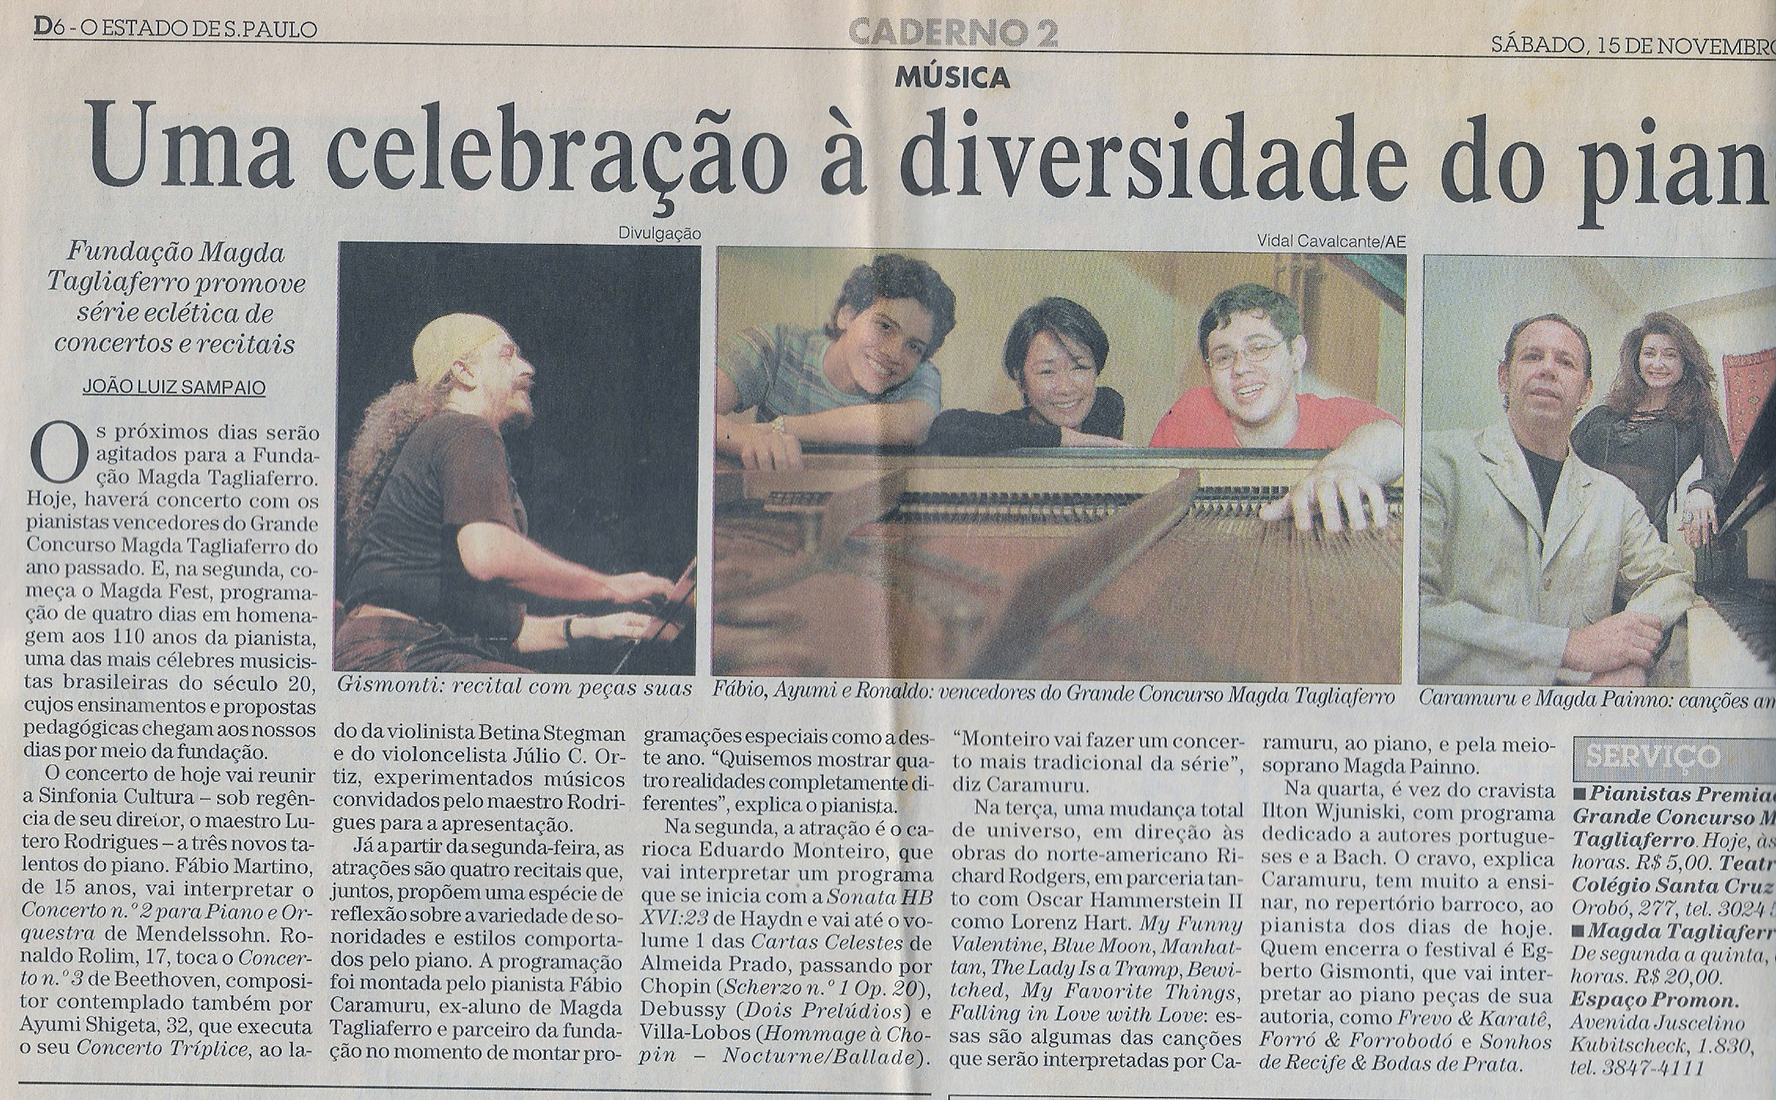 Magda Fest 2003, Festival em homenagem aos 110 anos da pianista Magda Tagliaferro - Patrocínio Petrobrás